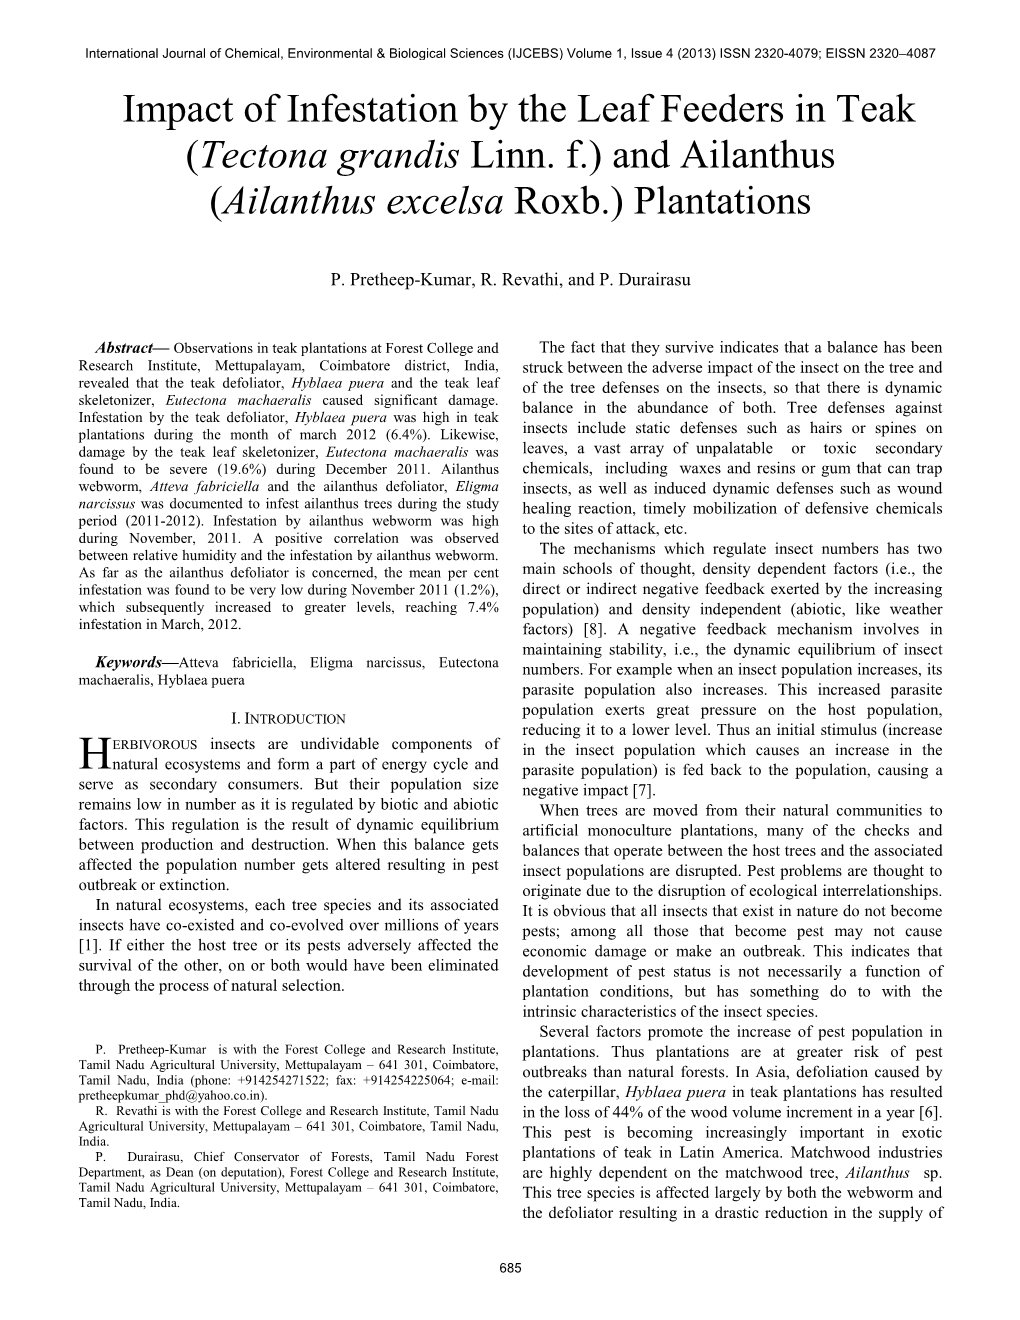 Tectona Grandis Linn. F.) and Ailanthus (Ailanthus Excelsa Roxb.) Plantations